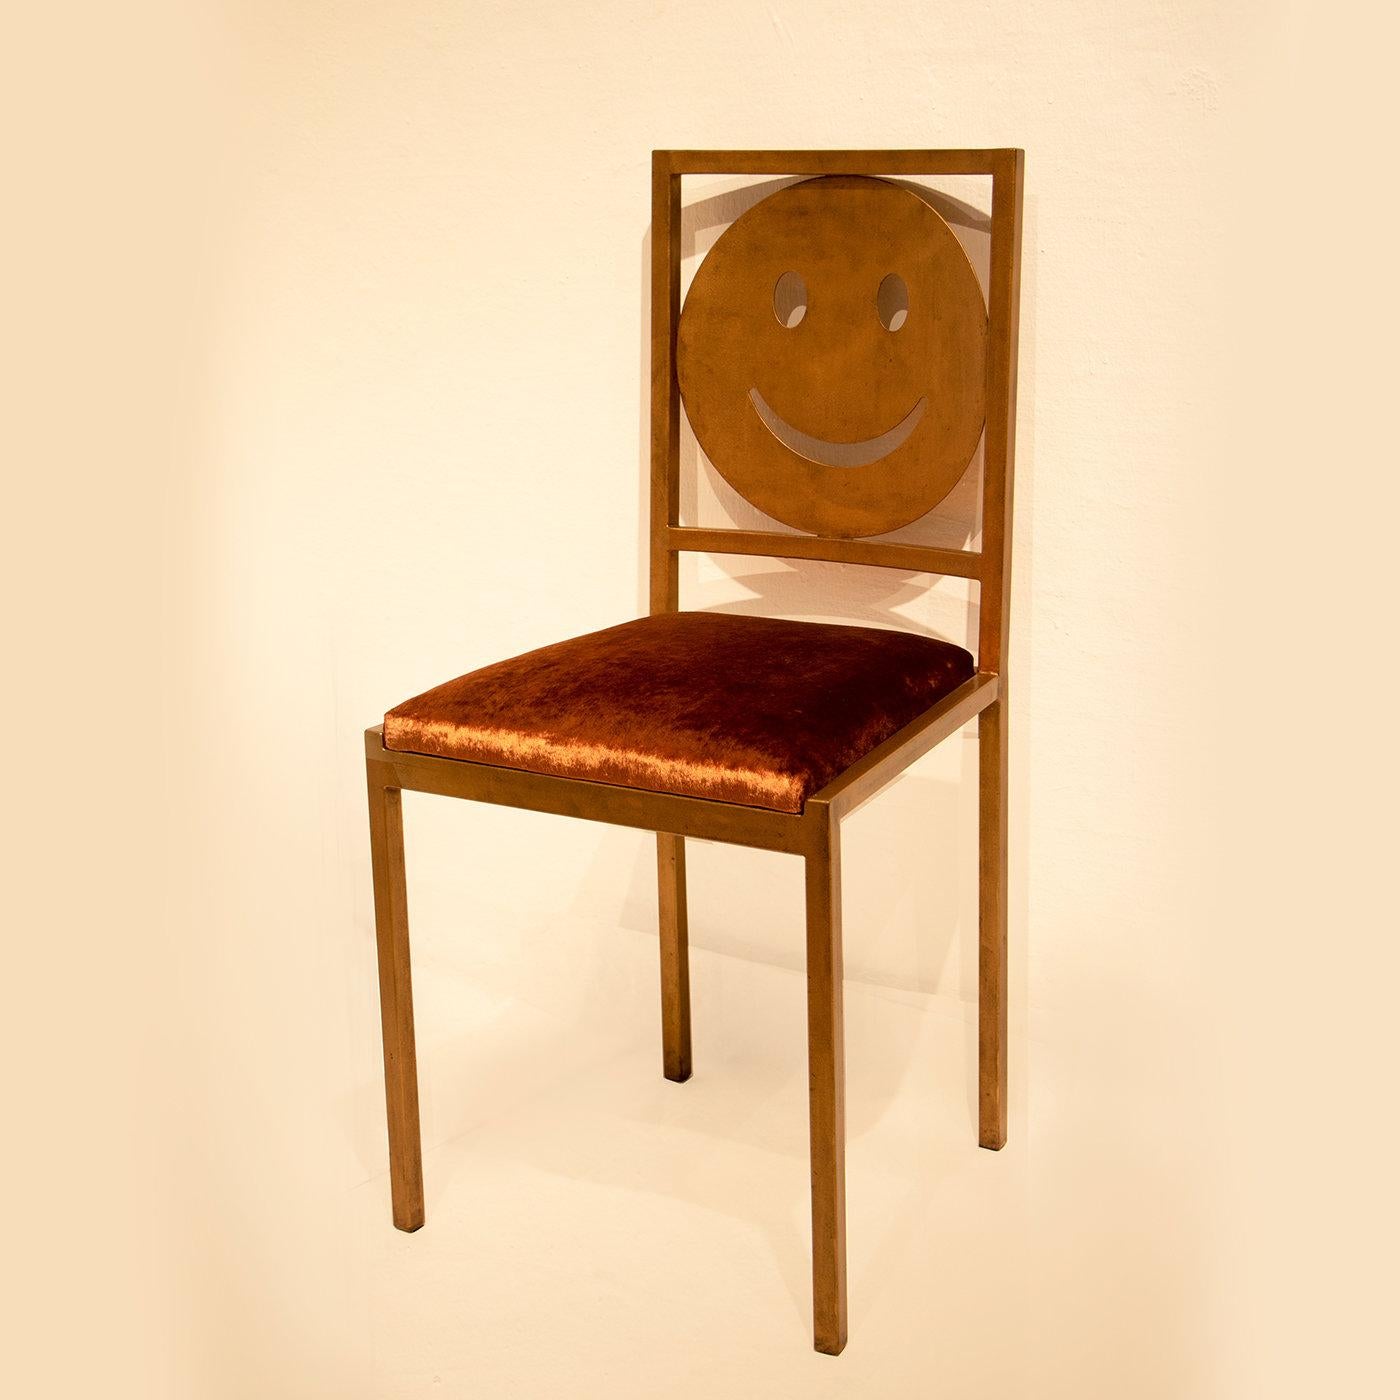 Dieser Stuhl spielt mit Texturkontrasten und bringt mit seiner exzentrischen Rückenlehne, die ein großes Smiley-Emoji zeigt, einen Hauch von Positivität in jeden Raum. Dieser Stuhl aus der Pop-Kollektion, die von populären Symbolen der